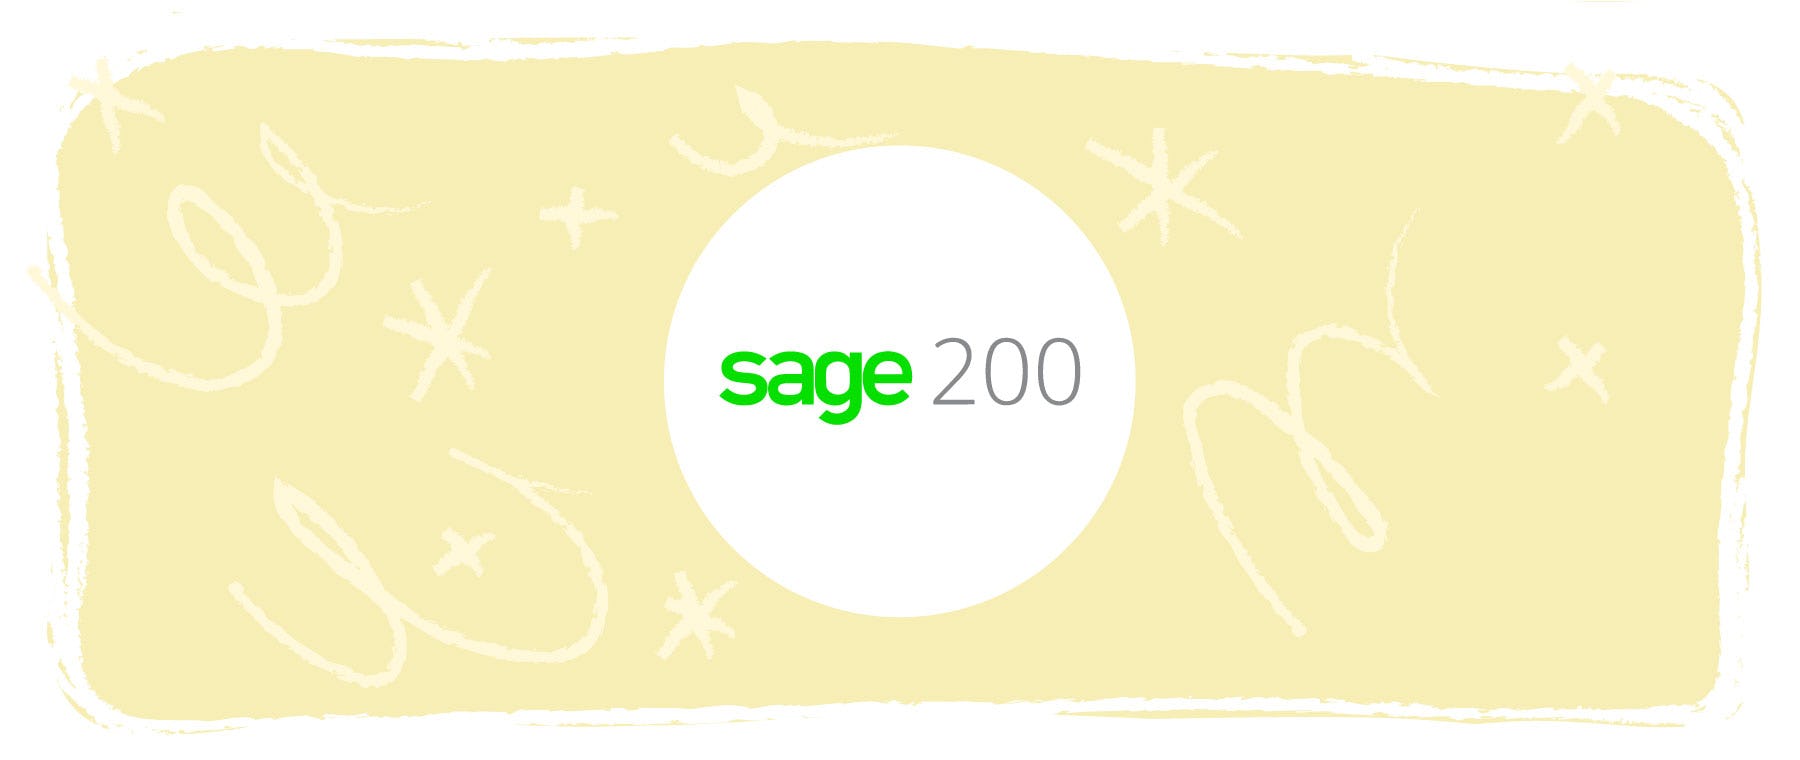 El sistema de contabilidad Sage 200